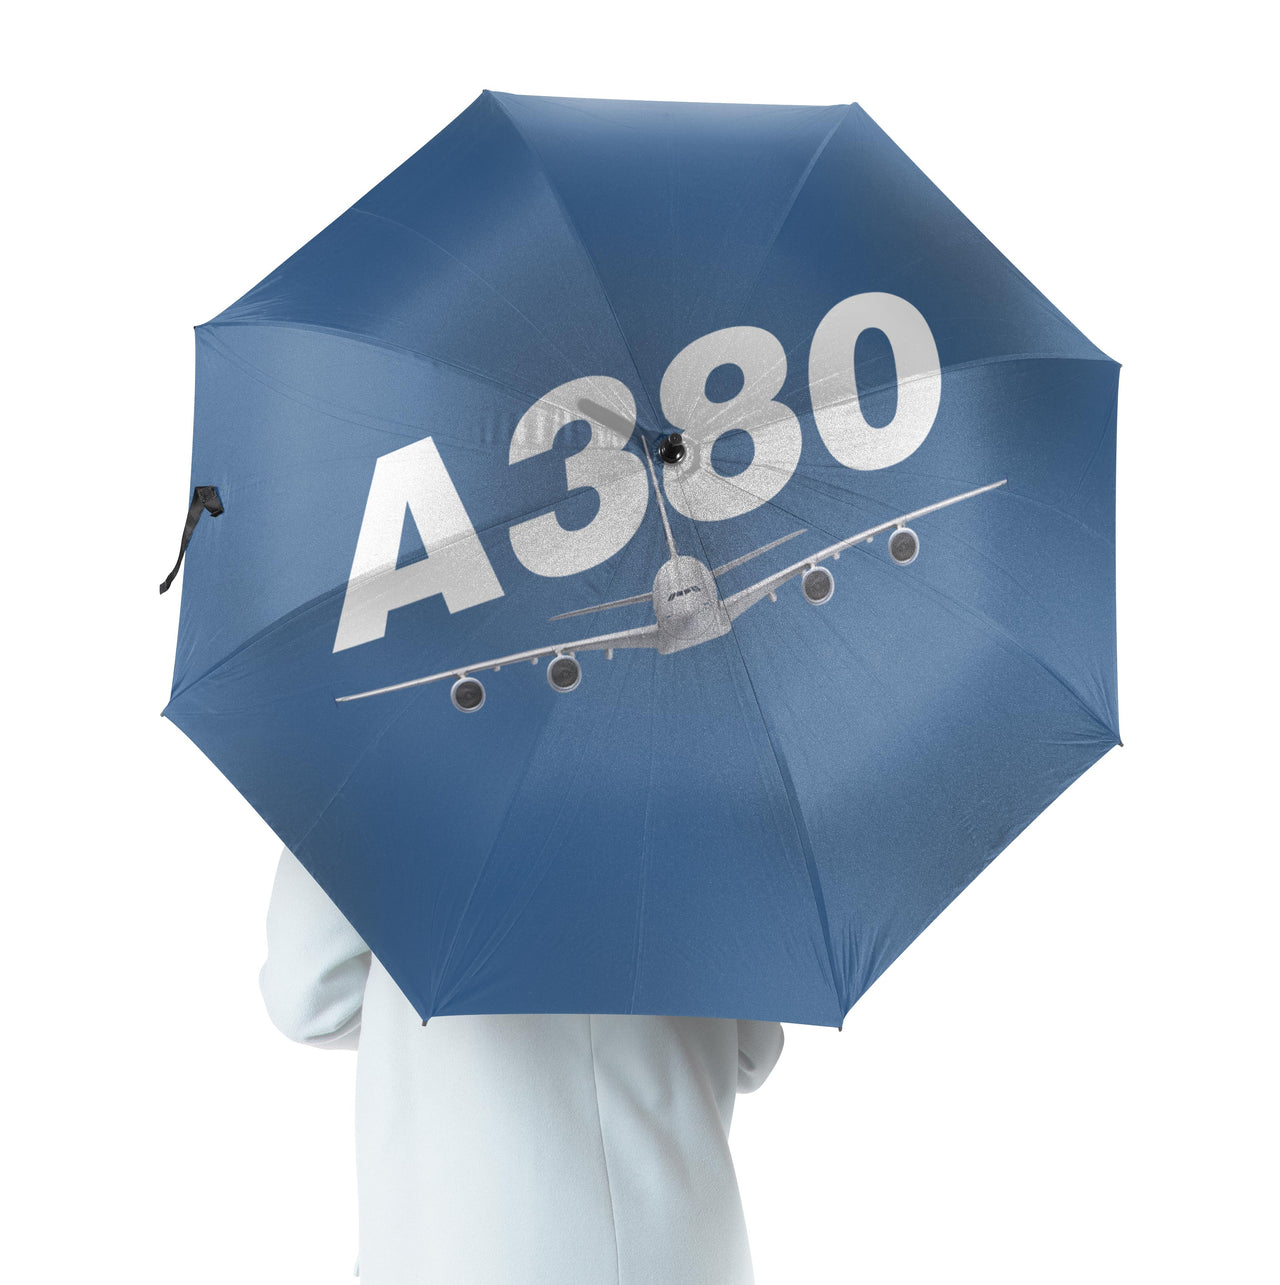 Super Airbus A380 Designed Umbrella